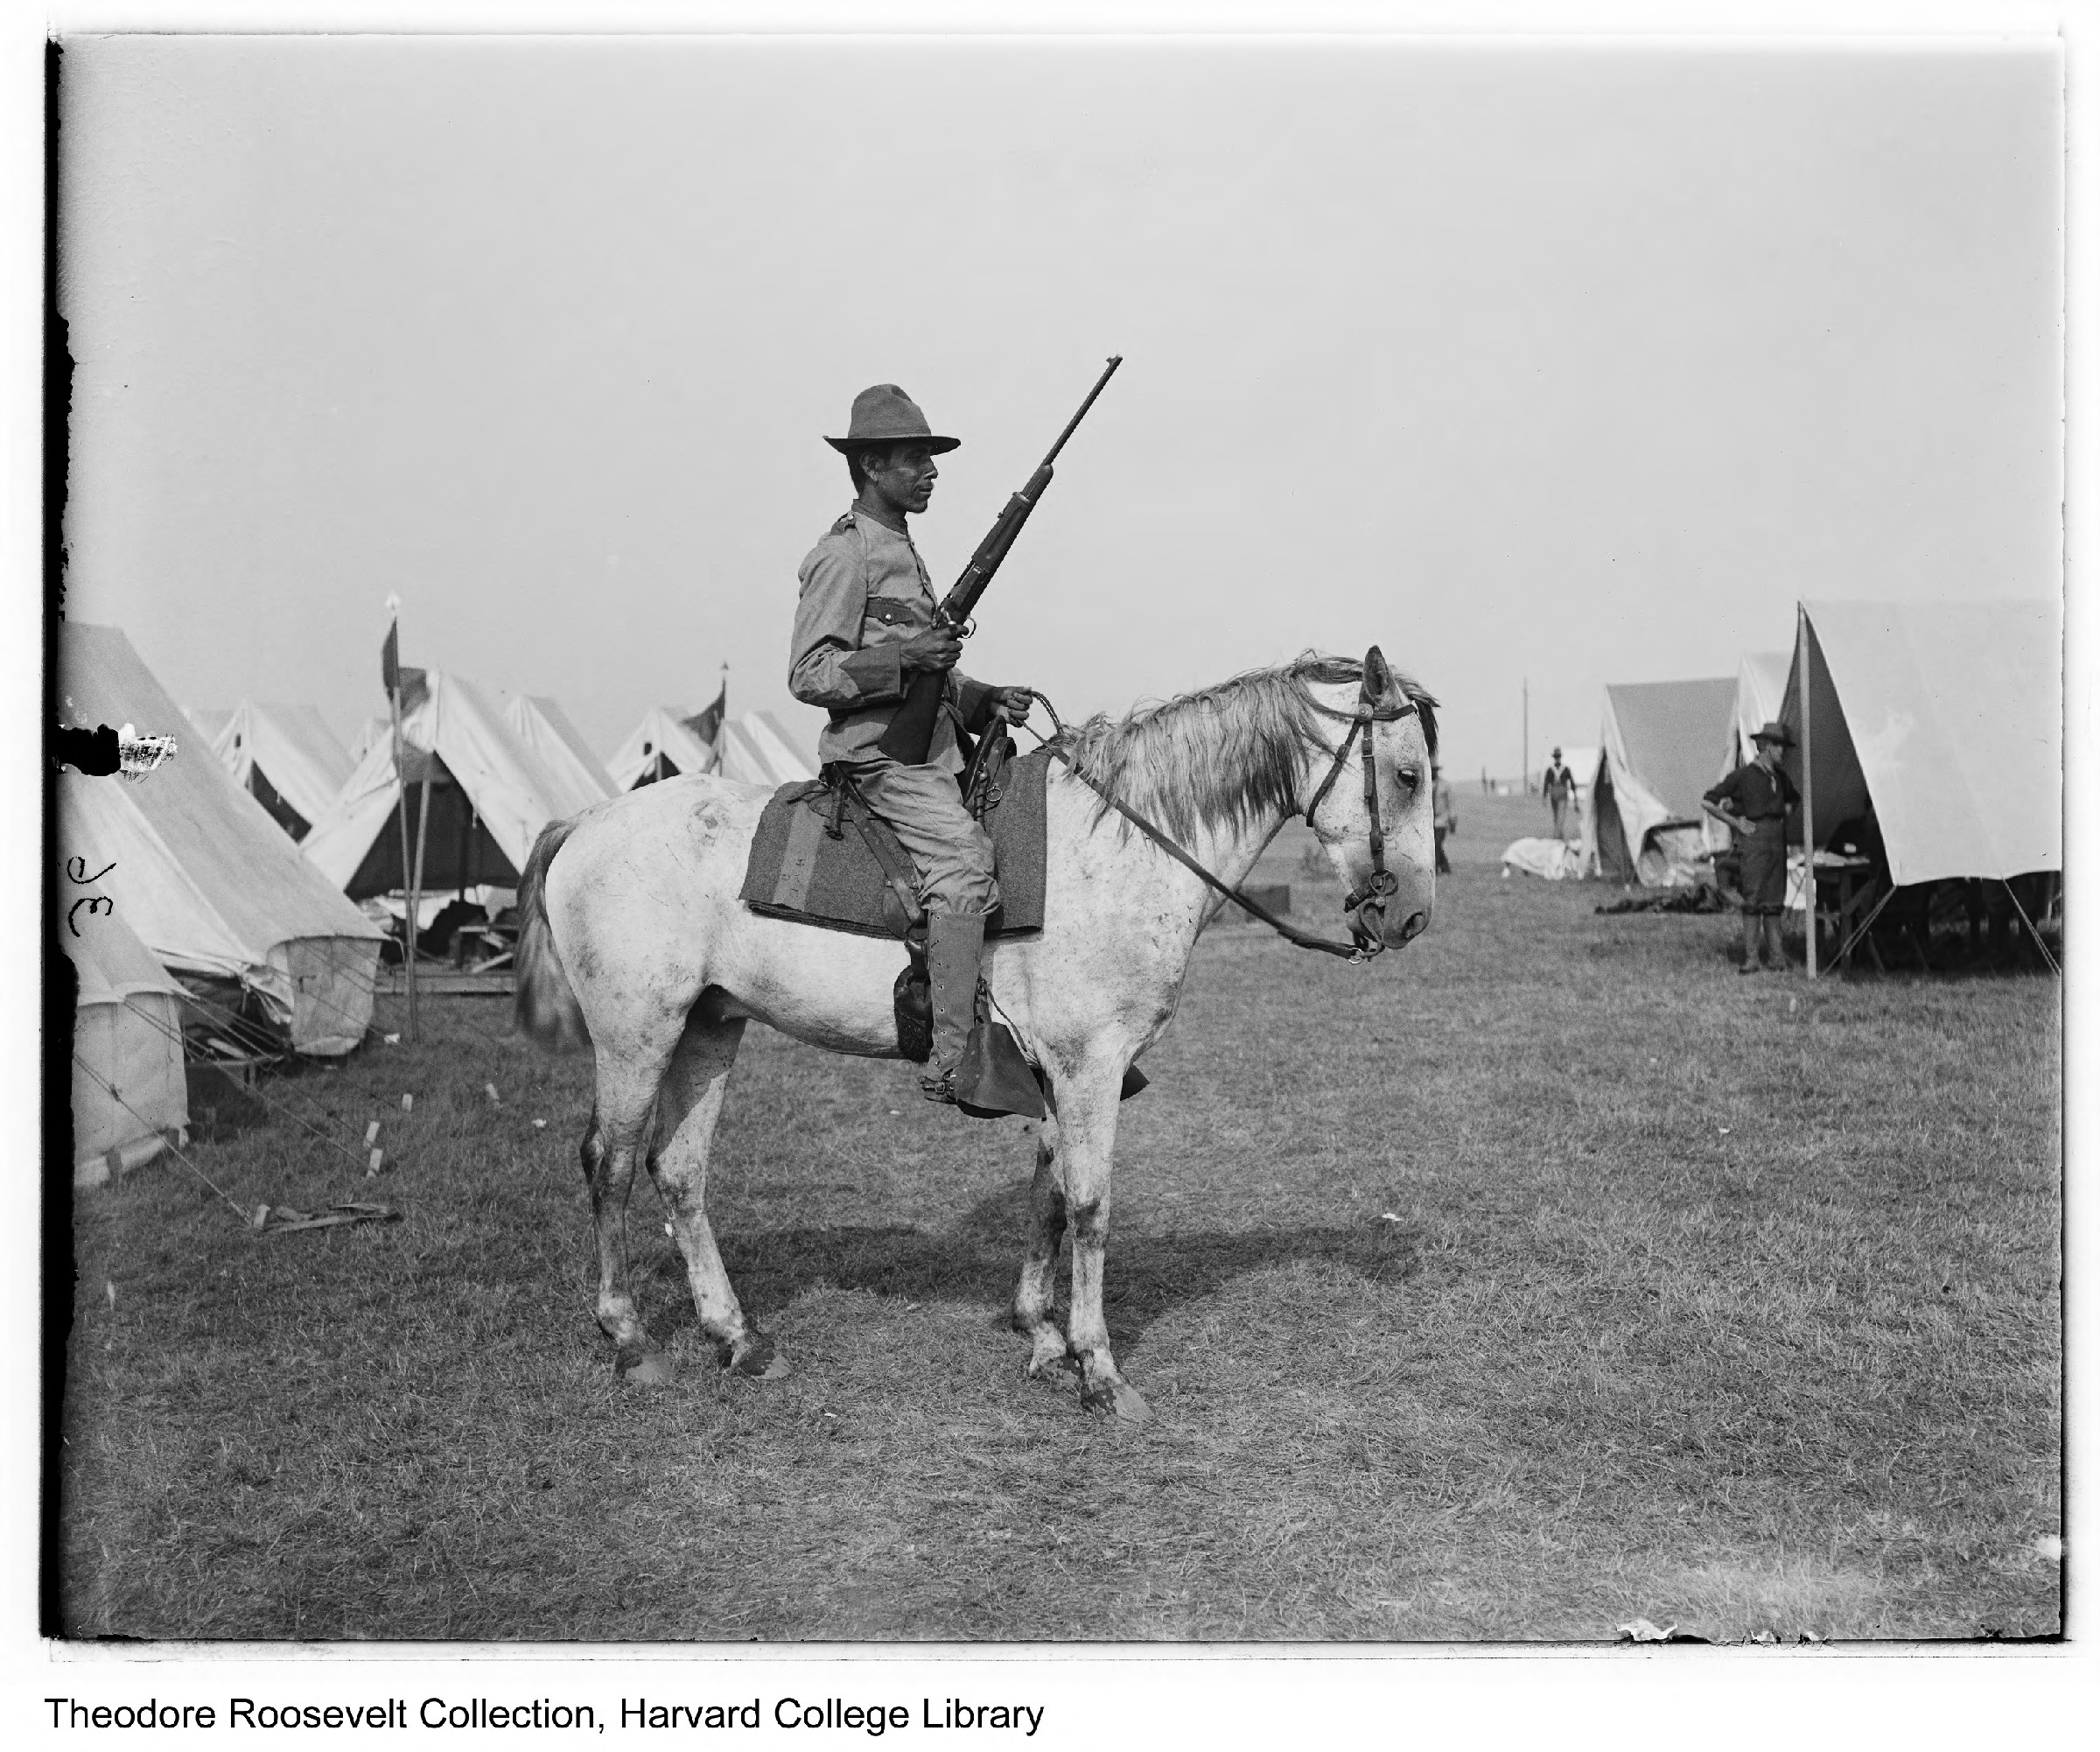 Teddy Roosevelt, viitorul președinte american, în timpul campaniei din Cuba, sursă foto National Park Service